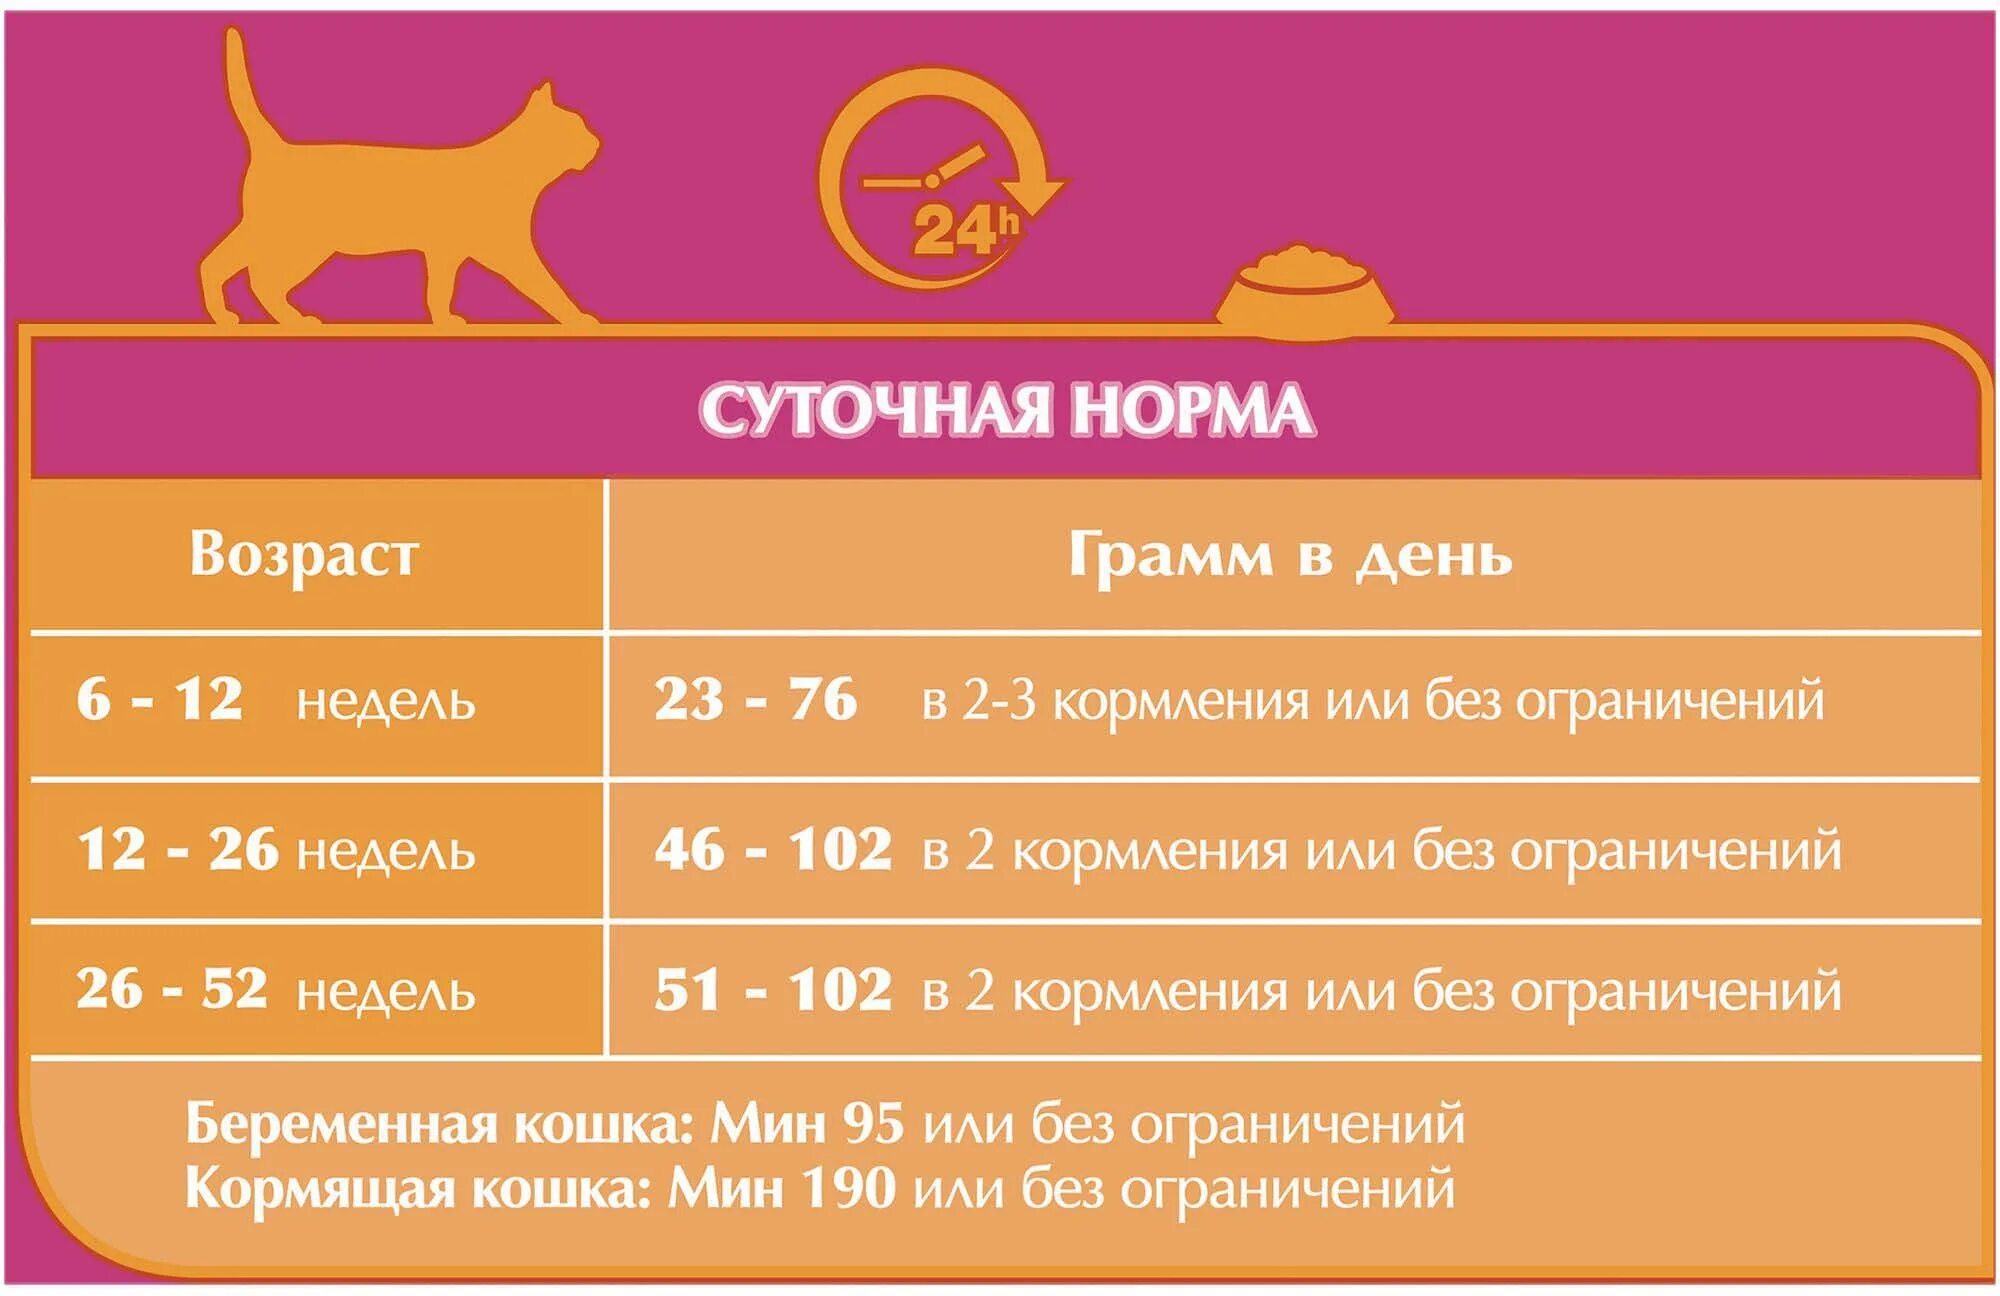 Программа корм для кота. Норма сухого корма для котят 5 месяцев. Норма сухого корма для котят 2 месяца. Норма сухого корма для кошек. Норма сухого корма для котят.